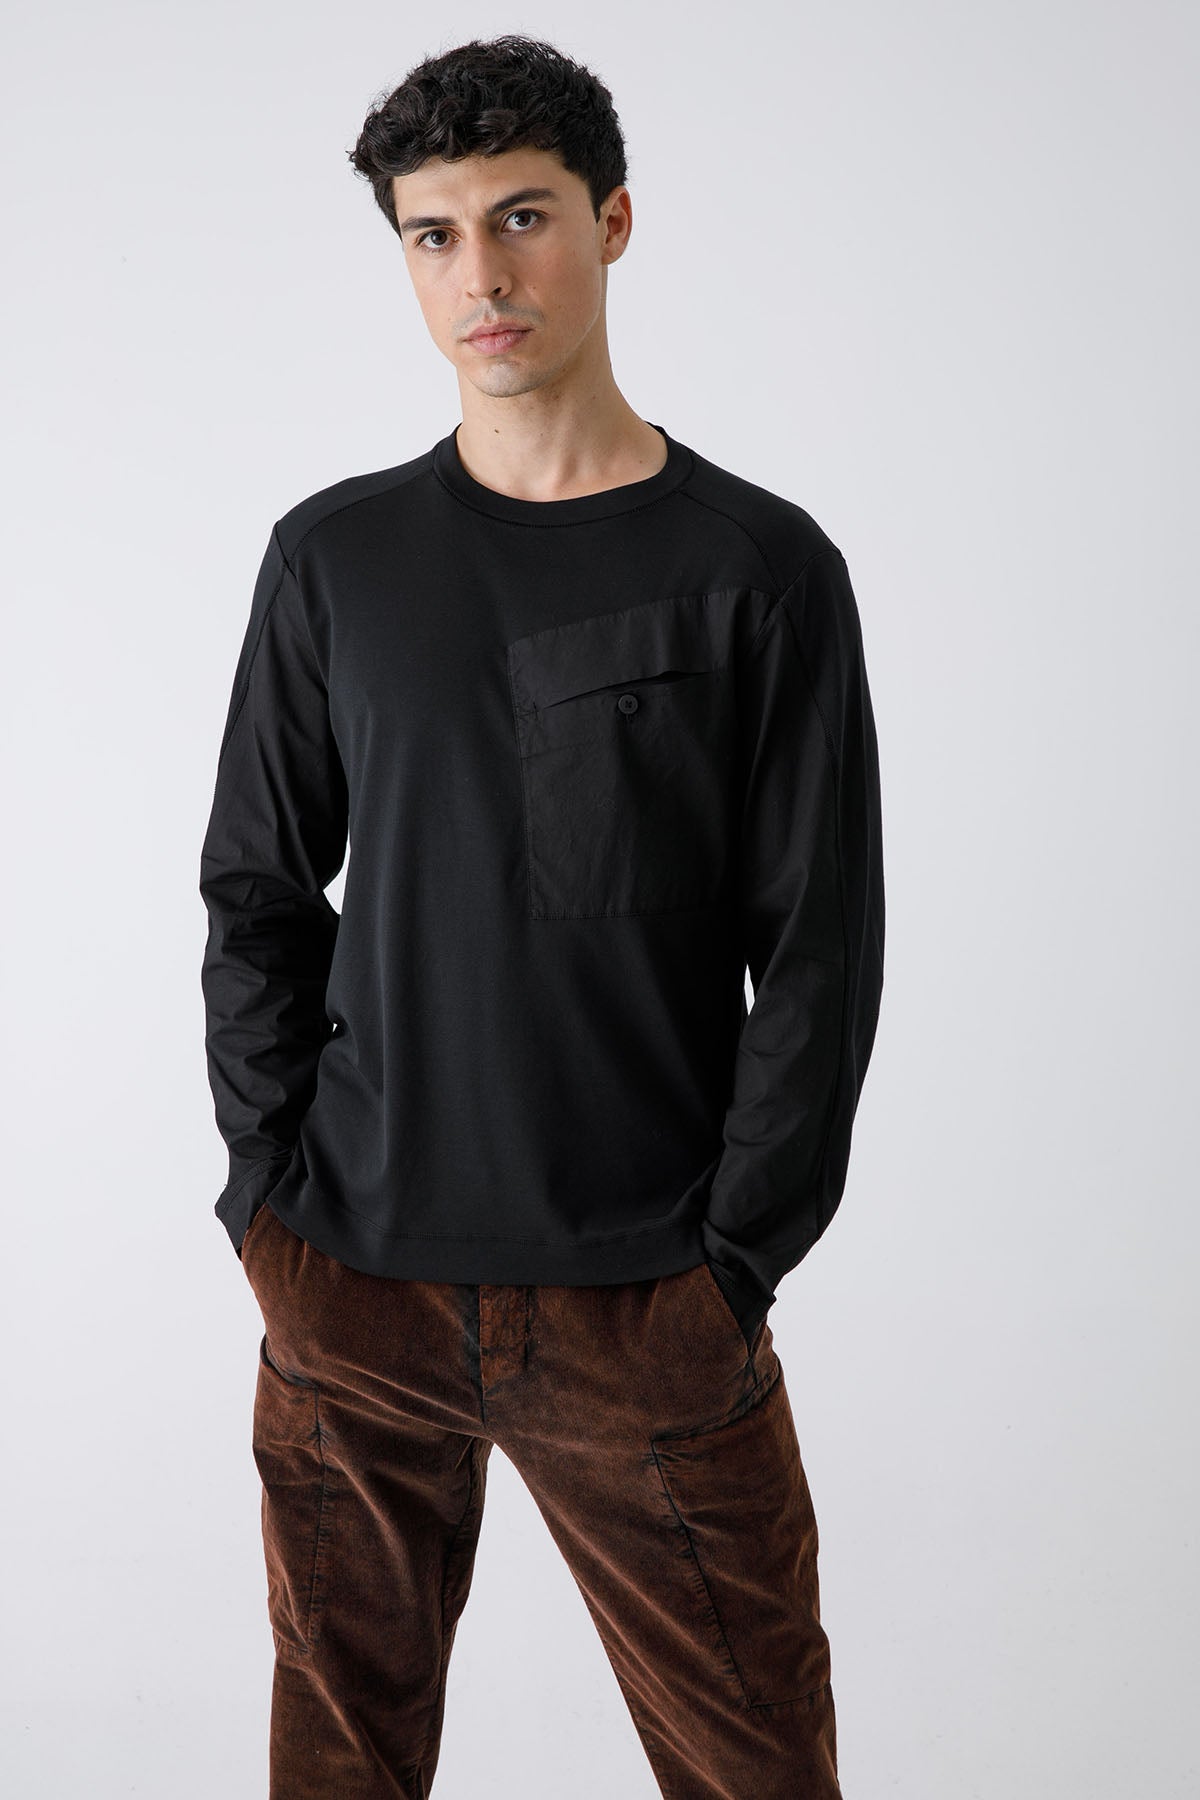 Transit Cep Detaylı Uzun Kollu T-shirt-Libas Trendy Fashion Store